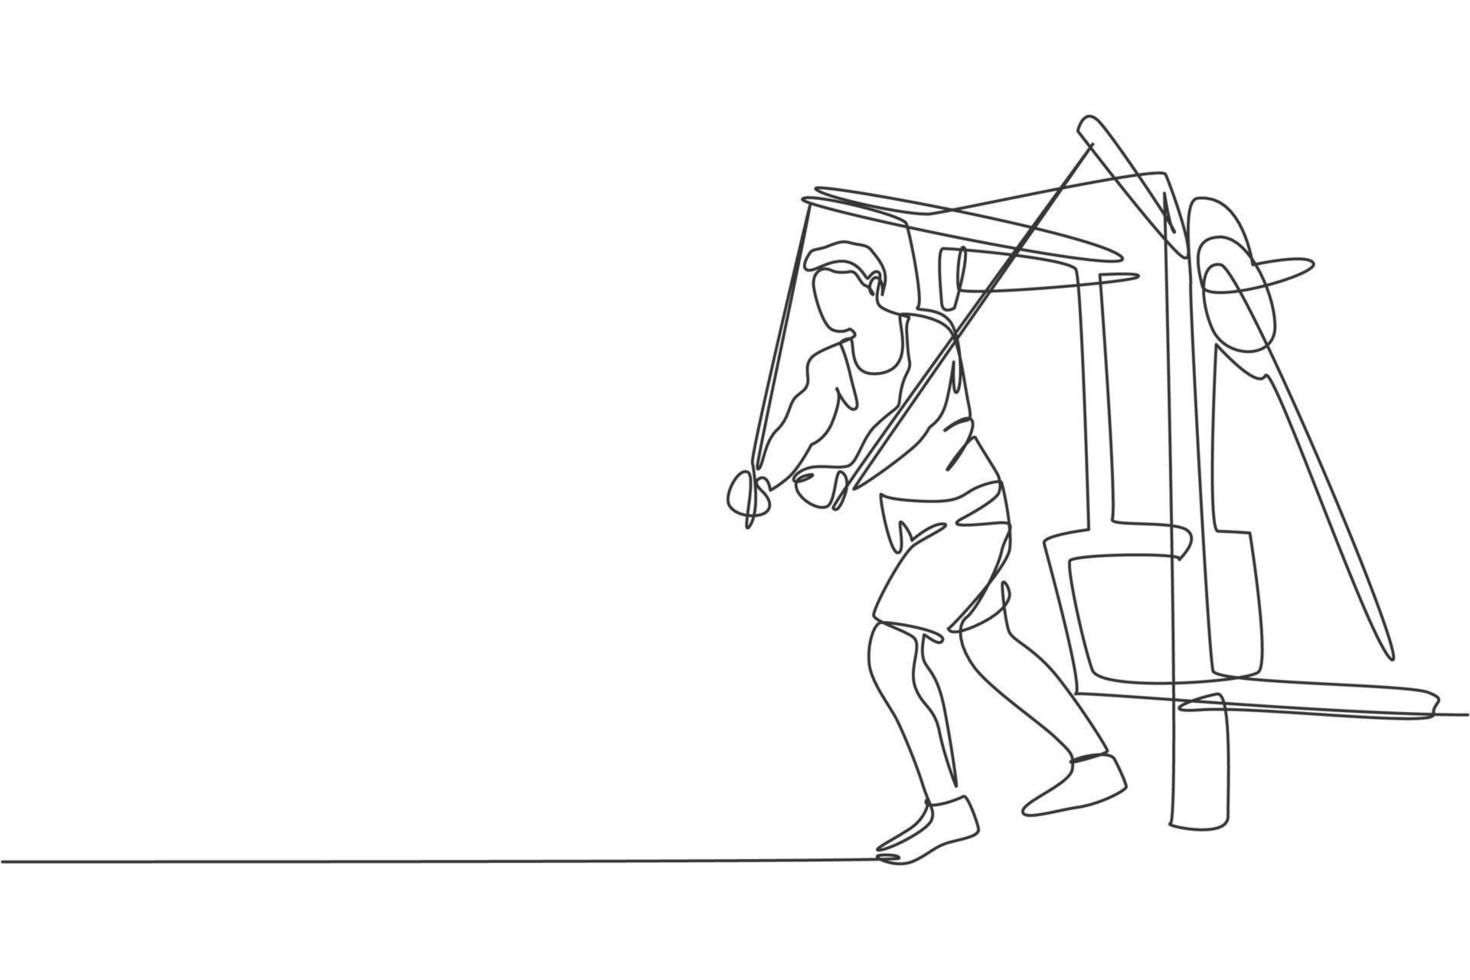 un dibujo de línea continua de un joven deportista que trabaja con una máquina de cable cruzado en el centro del club de fitness. concepto de deporte de fitness saludable. Ilustración de vector de diseño de dibujo de línea única dinámica